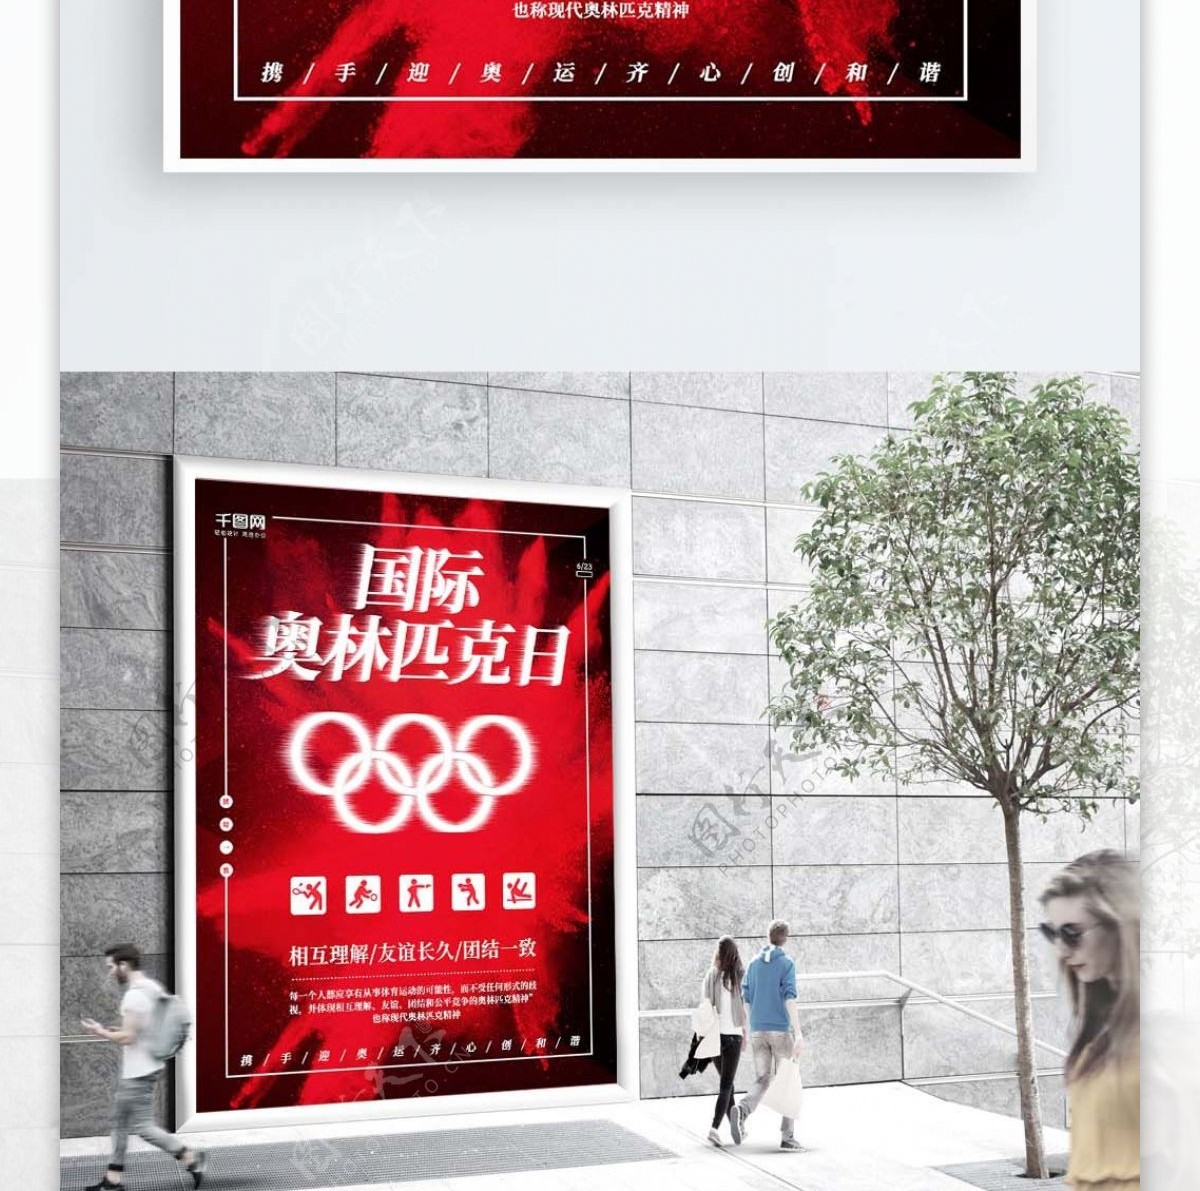 红色奥林匹克日海报